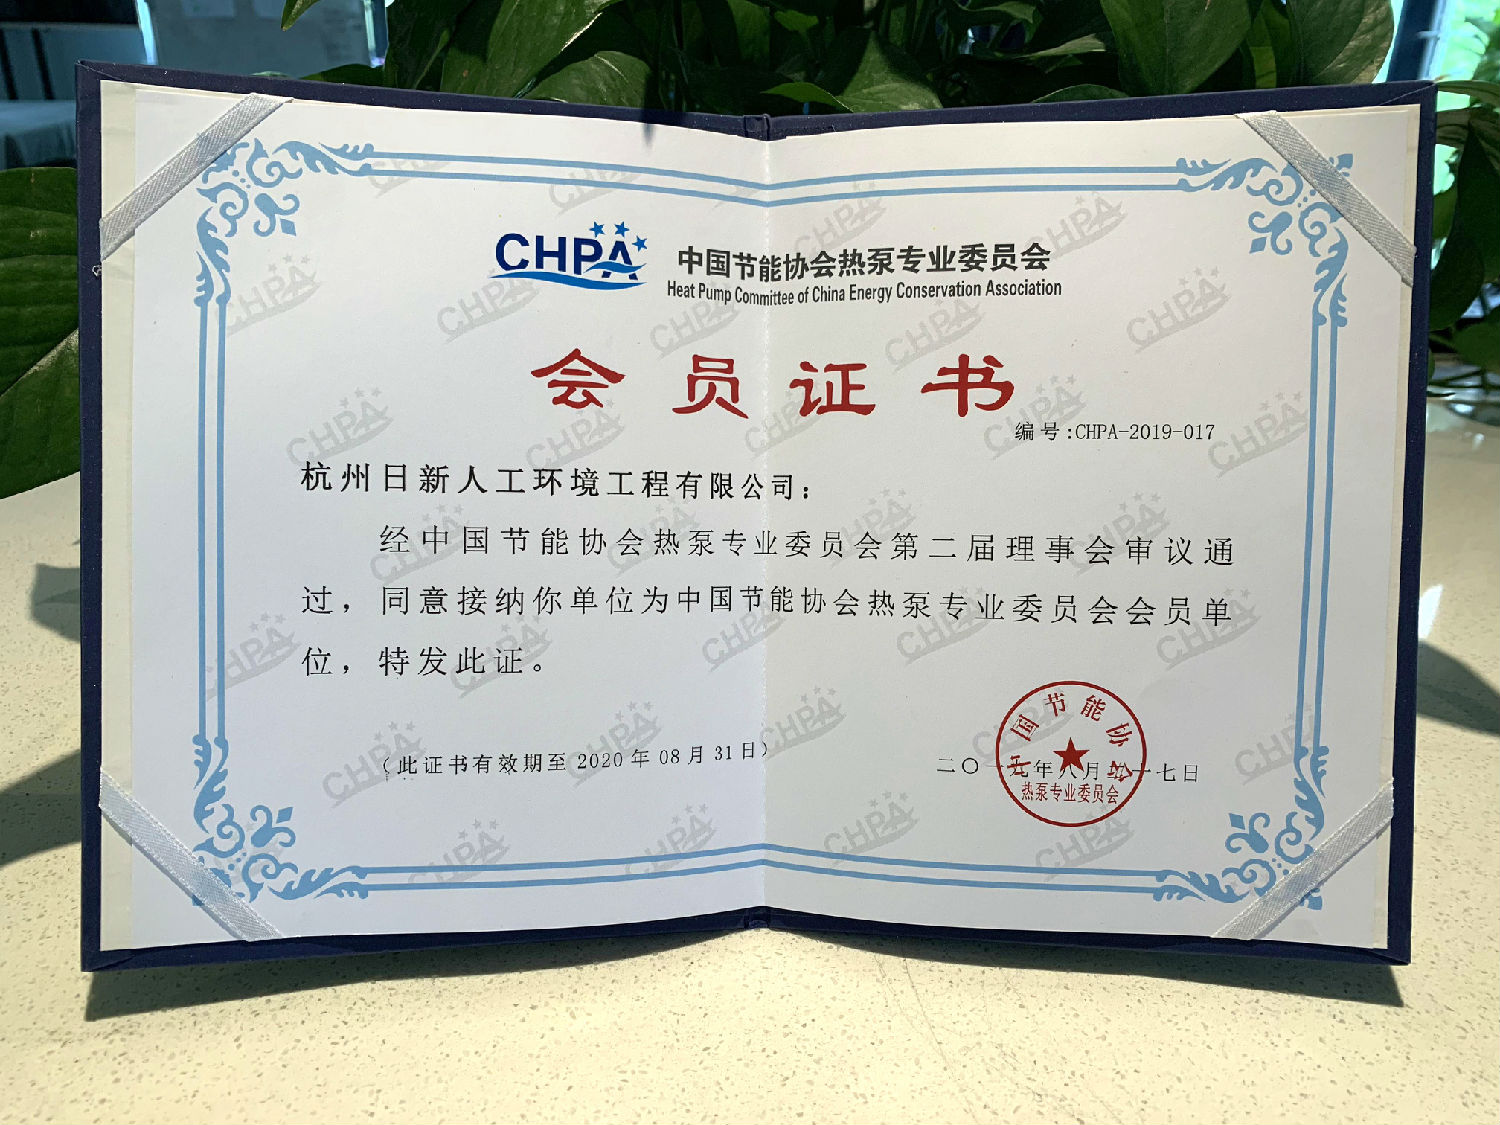 日新环境 CHPA中国节能协会热泵专业委员会会员单位